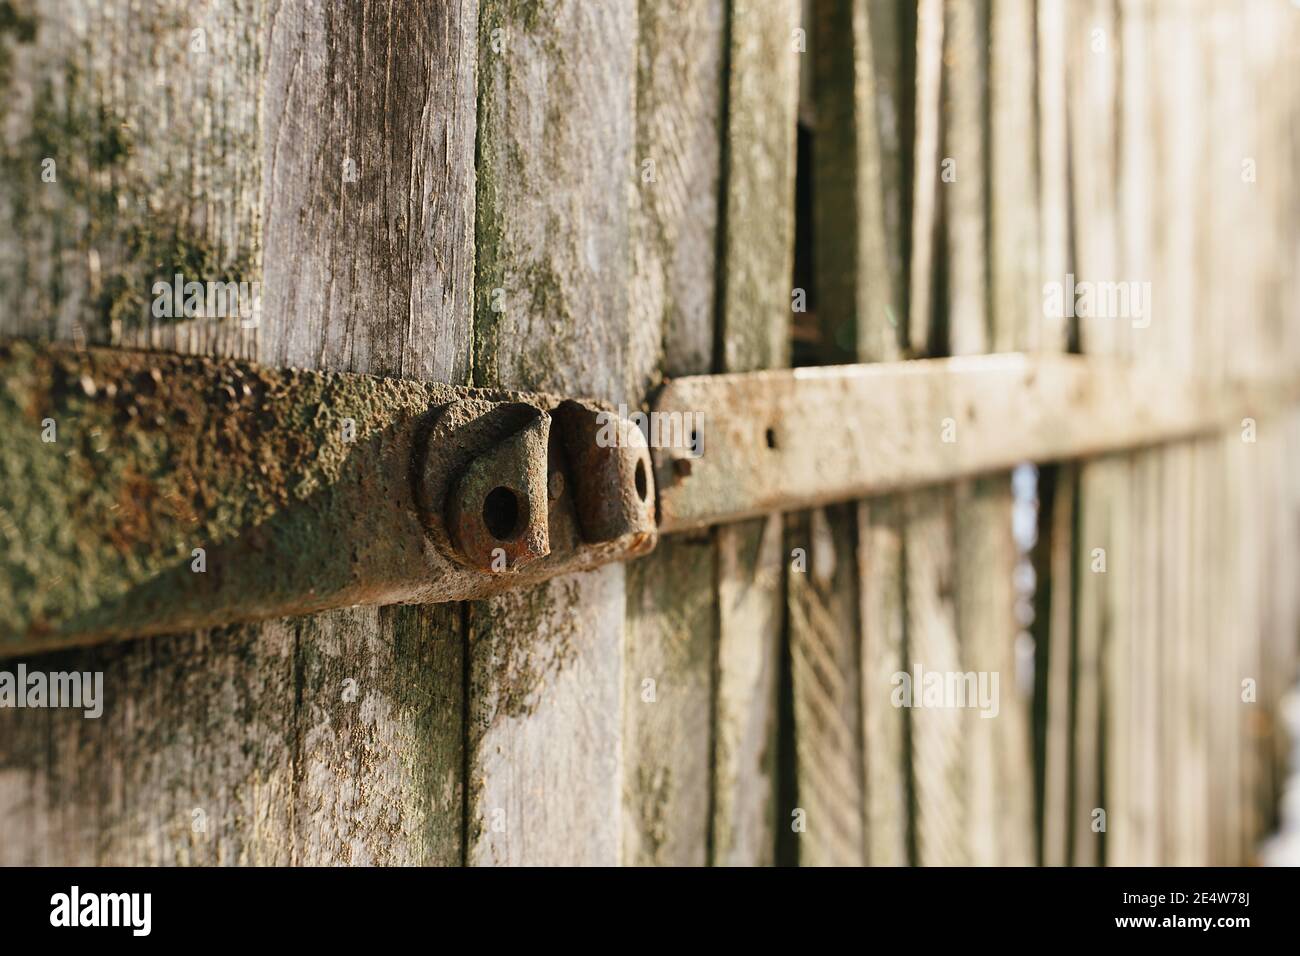 Vieux arrière-plan de clôture en bois. Texture des anciennes planches Banque D'Images